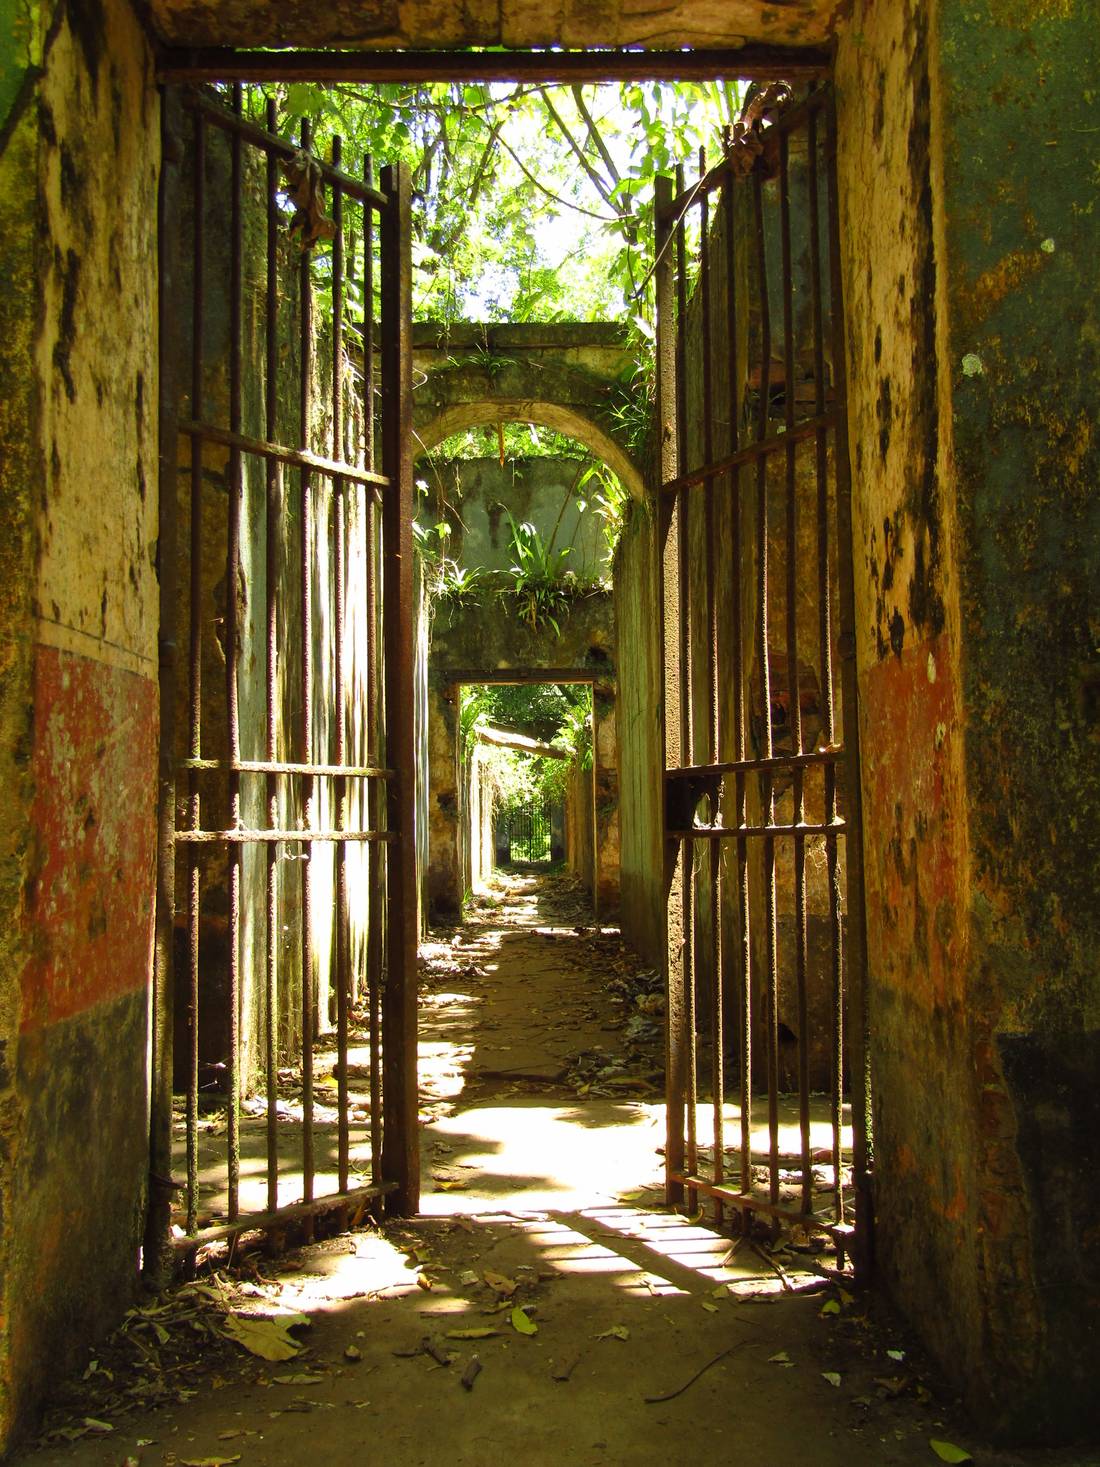 Saint-Joseph’s prison (cell’s hallway)